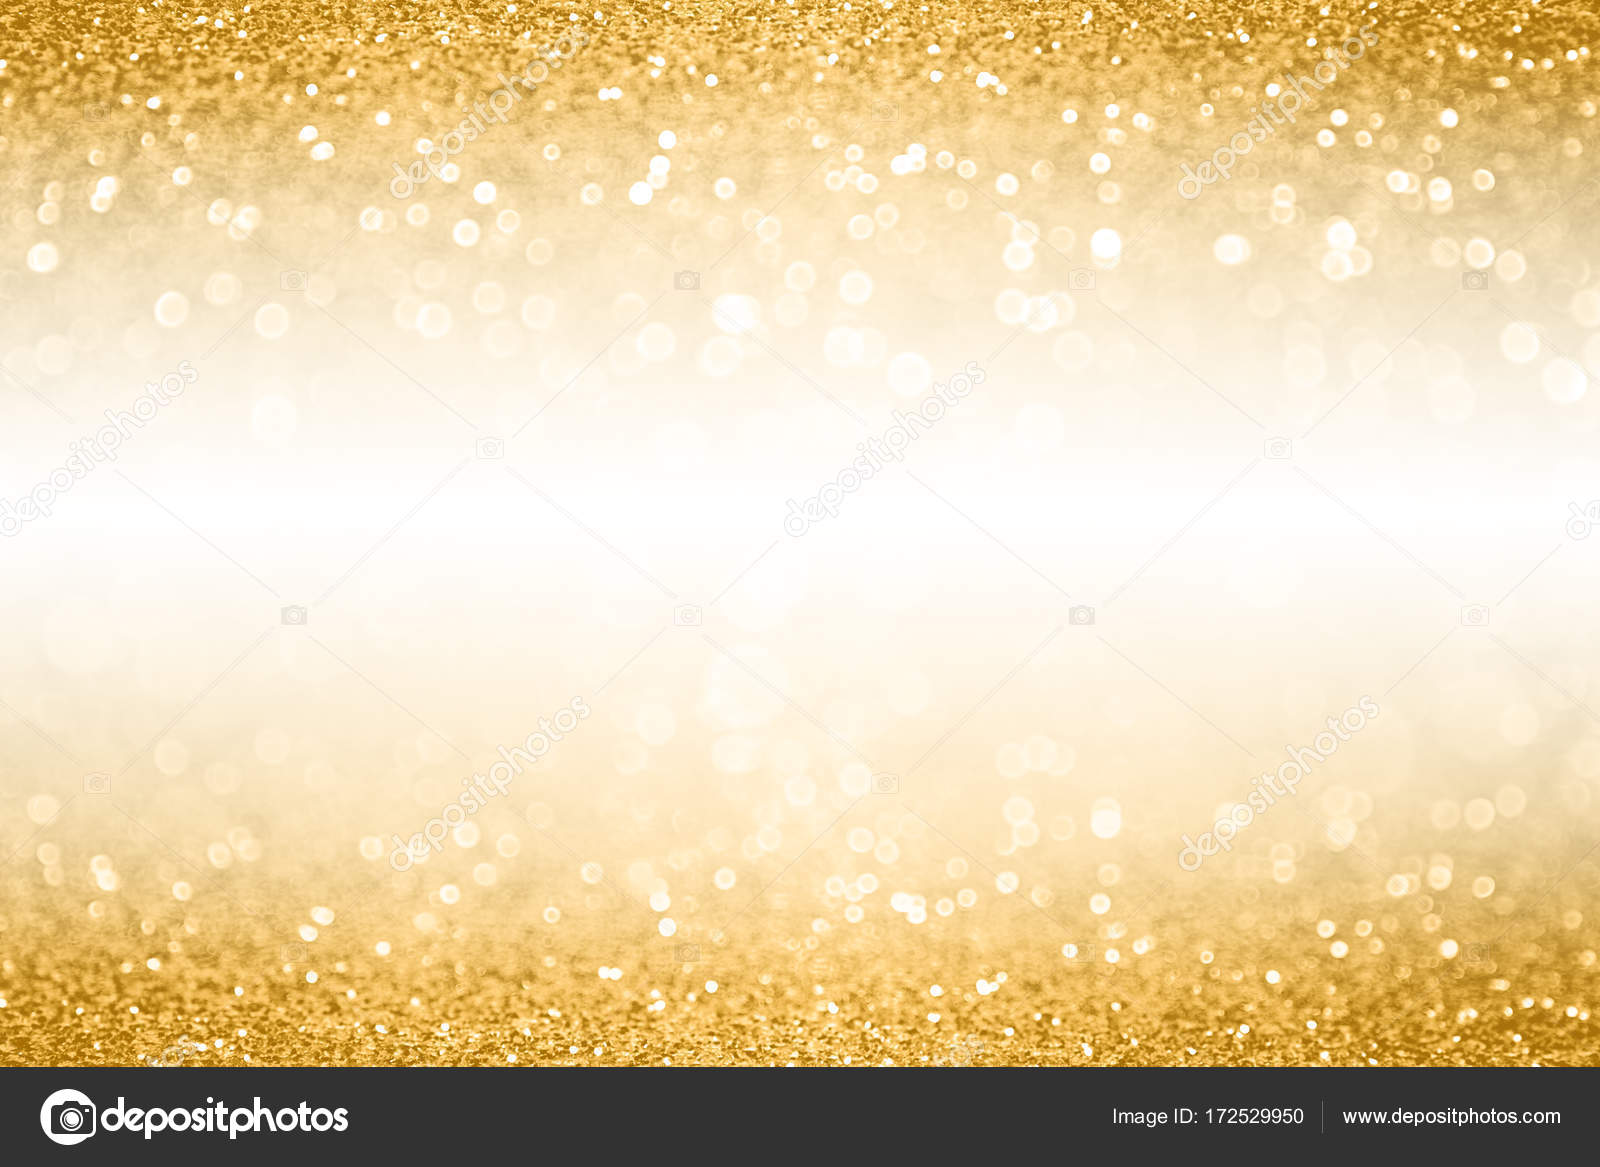 Download 930 Koleksi Background Banner Gold HD Paling Keren